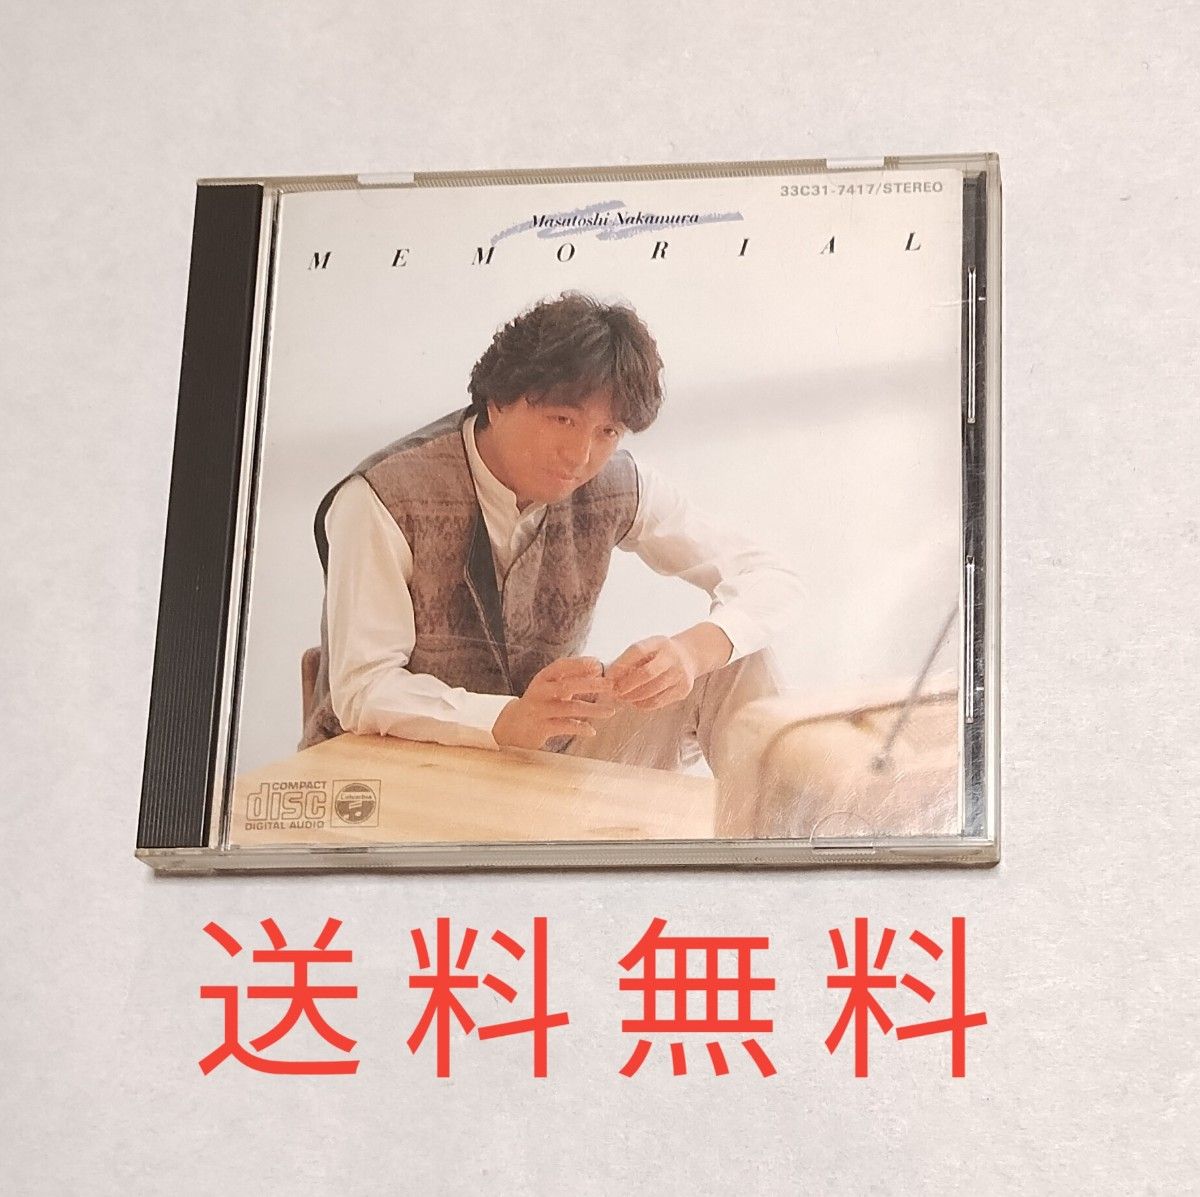 【送料無料】中村雅俊 CD メモリアル MEMORIAL